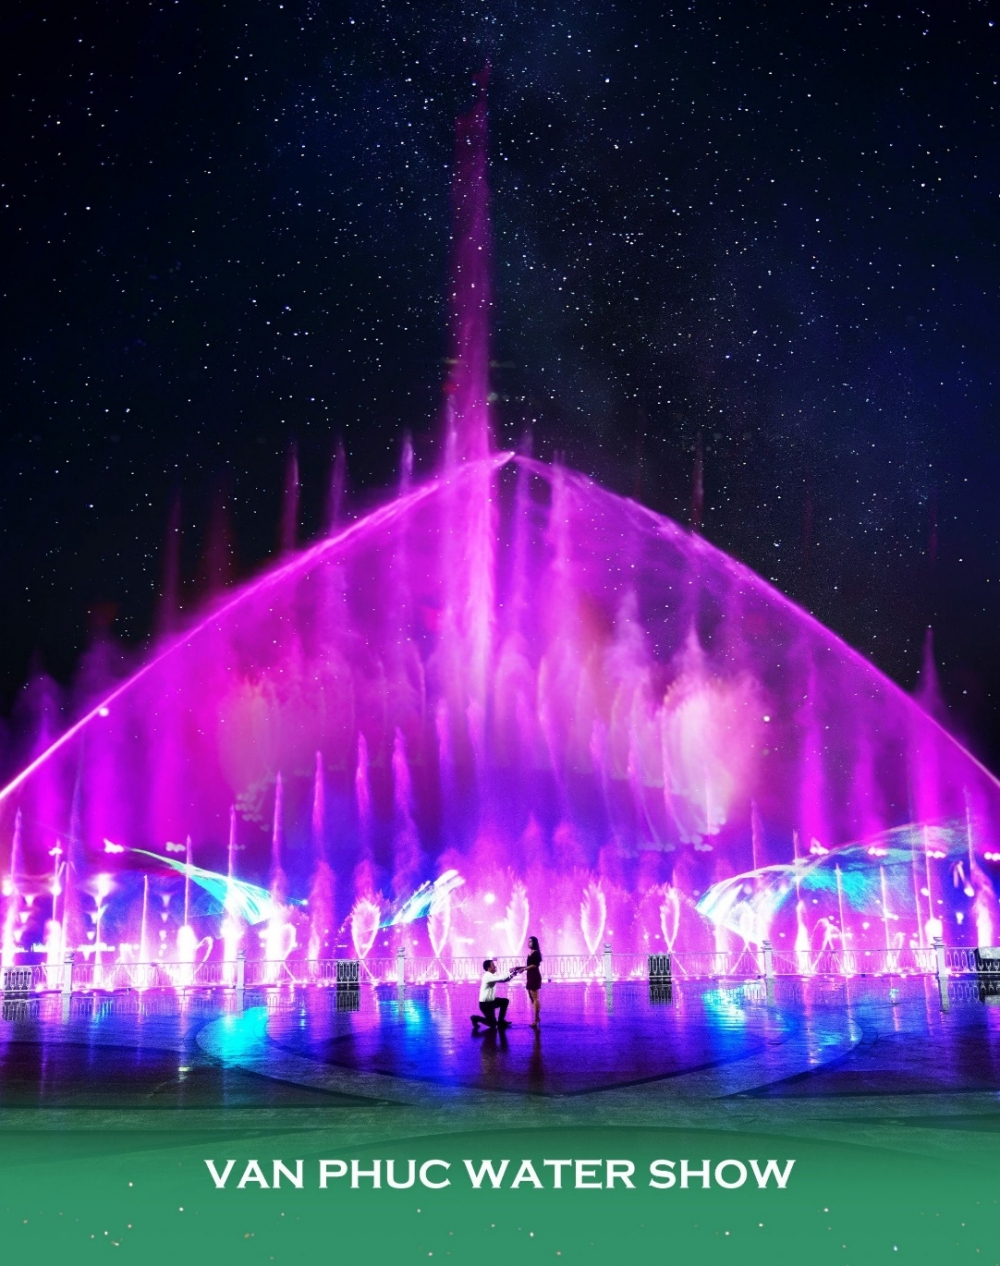 Quảng trường nhạc nước Van Phuc Water Show tại Van Phuc City là địa điểm lý tưởng để tổ chức cầu hôn